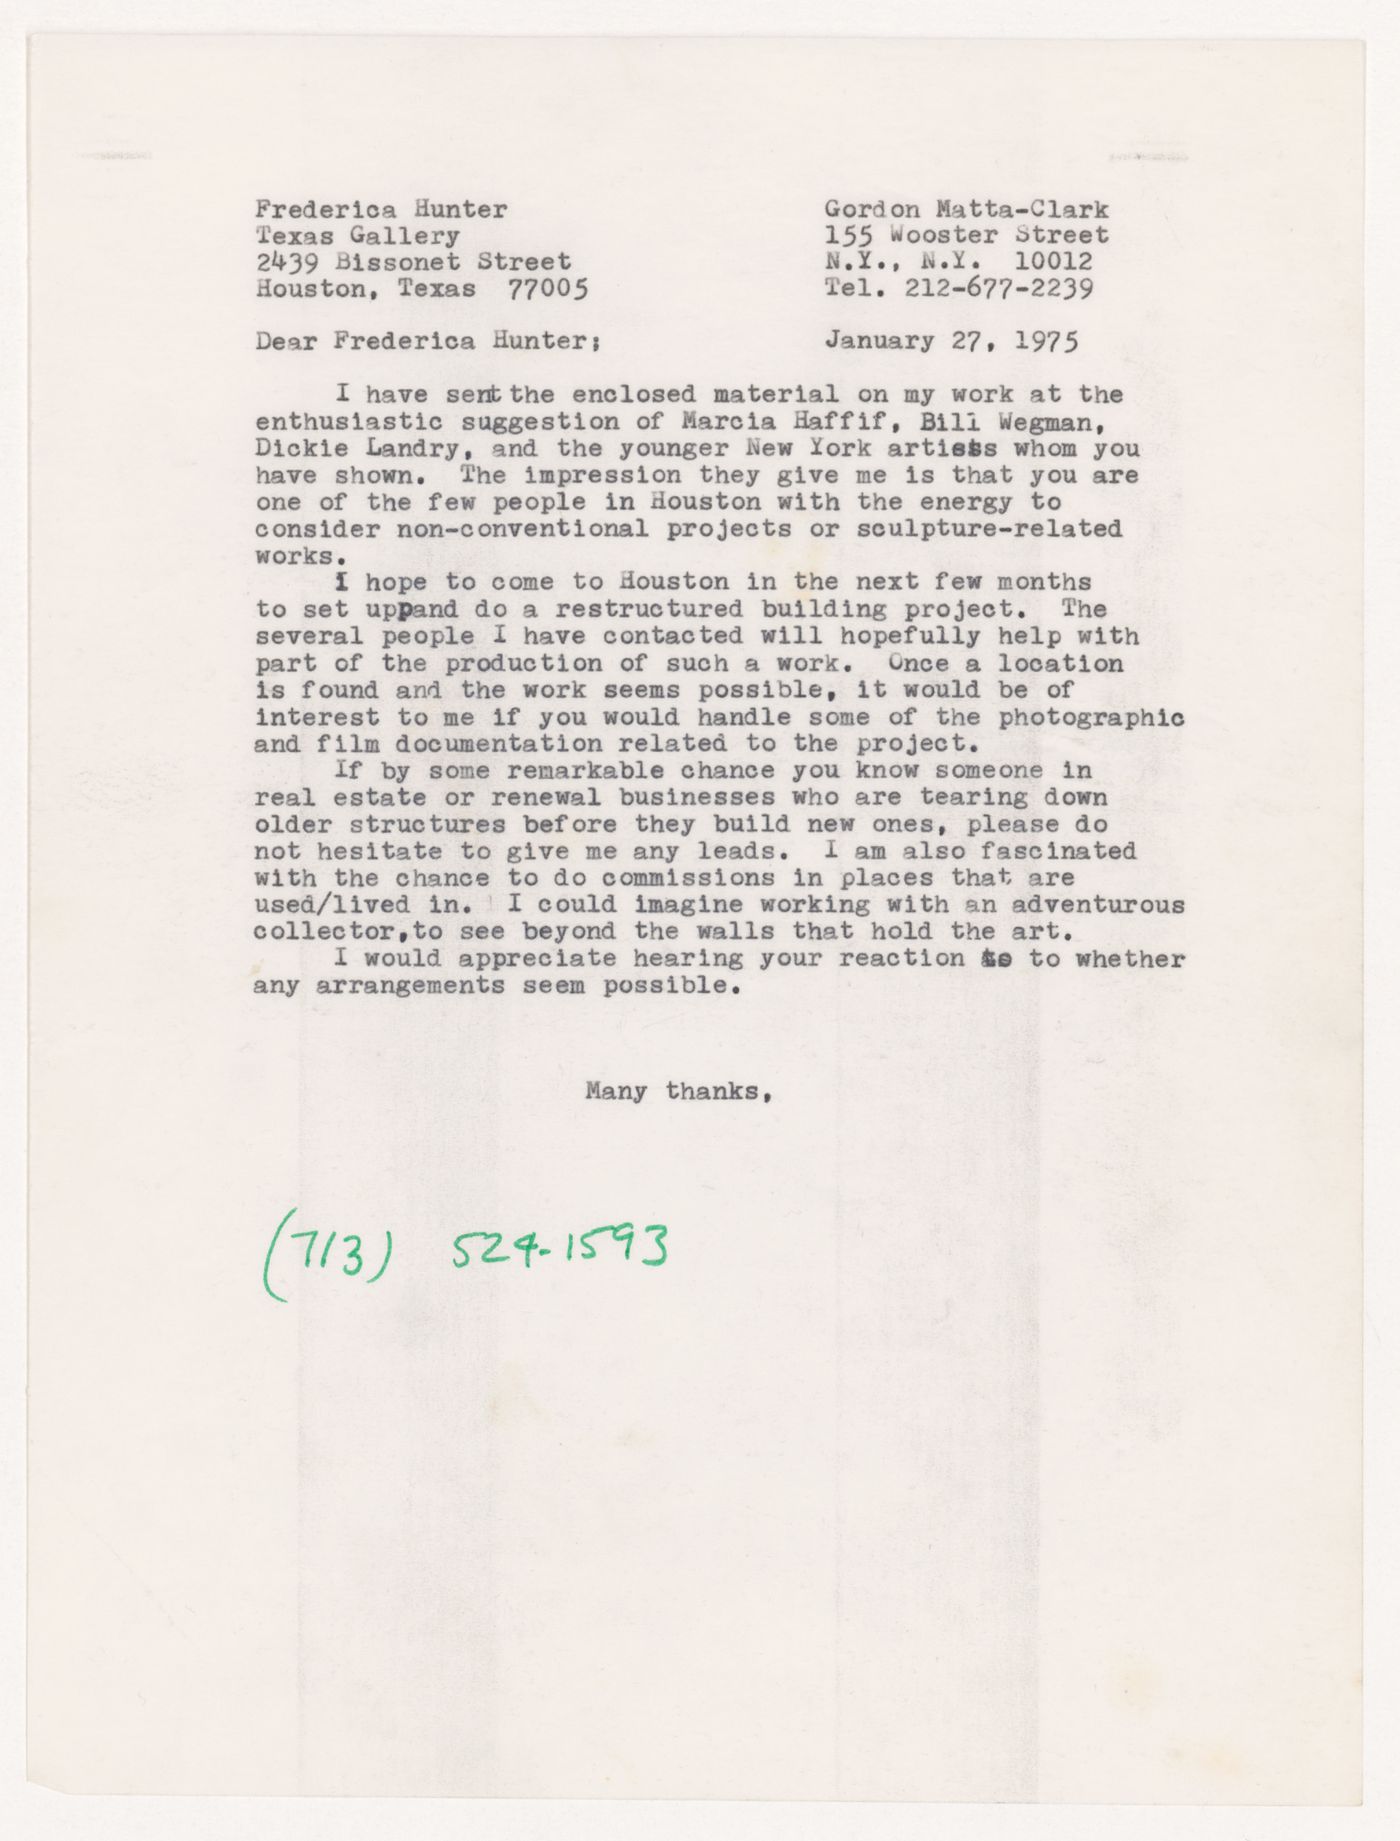 Letter from Gordon Matta-Clark to Frederica Hunter